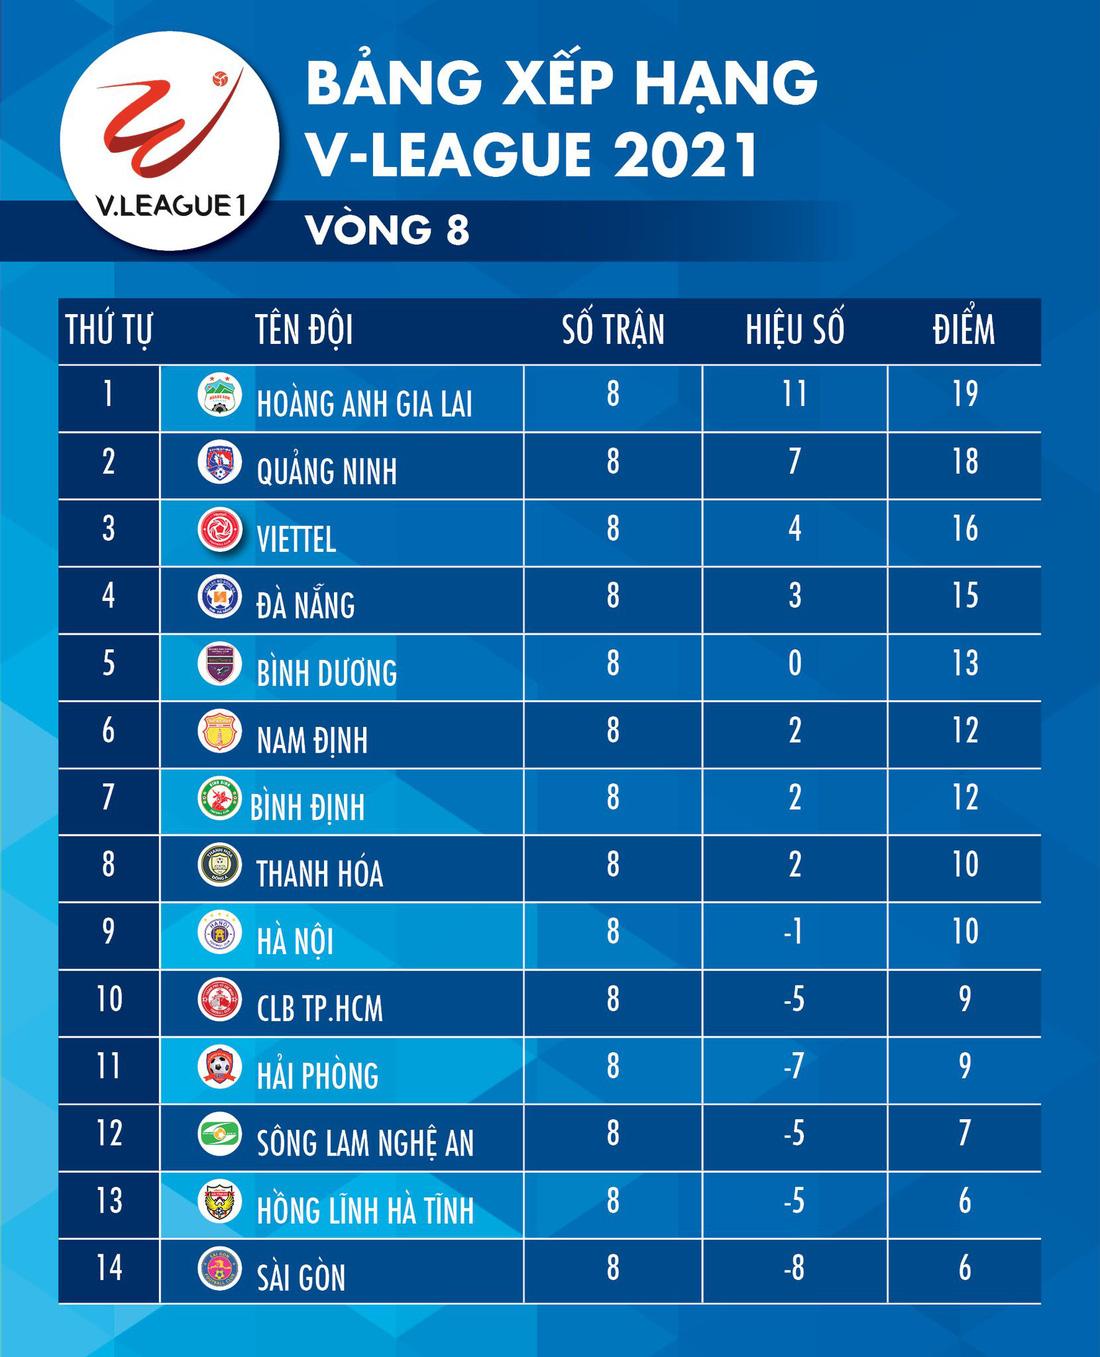 Kết quả, bảng xếp hạng V-League 2021: HAGL số 1, CLB TP.HCM tạm thoát hiểm - Ảnh 2.